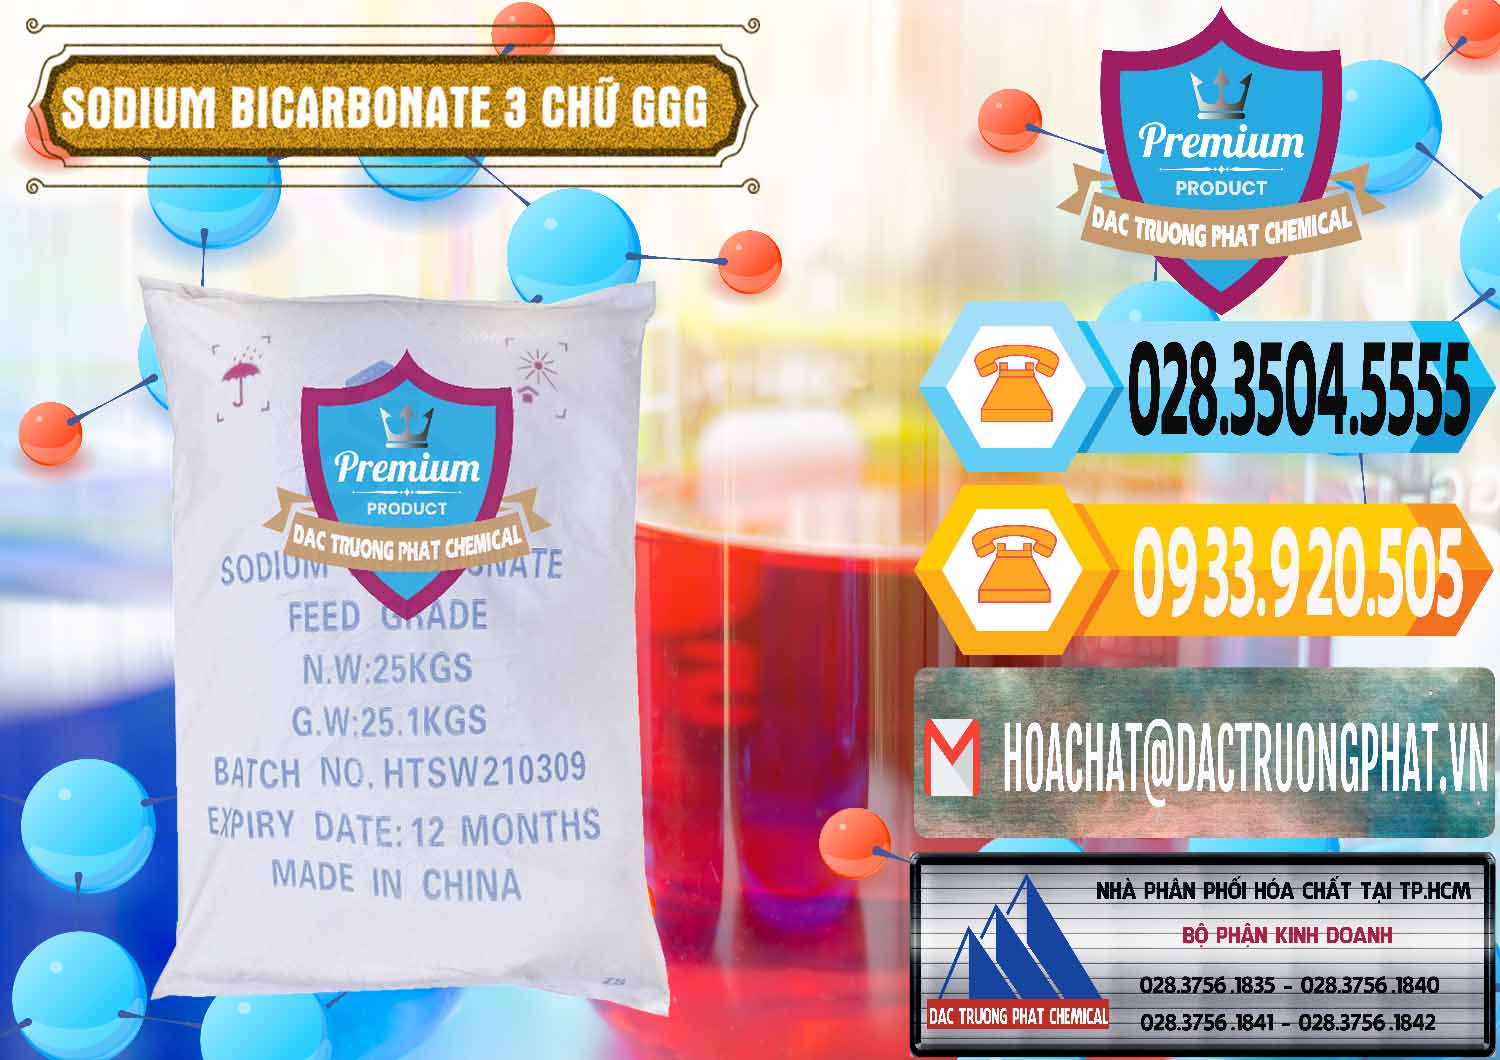 Nơi bán và phân phối Sodium Bicarbonate – Bicar NaHCO3 Food Grade 3 Chữ GGG Trung Quốc China - 0259 - Cty chuyên phân phối _ cung ứng hóa chất tại TP.HCM - hoachattayrua.net